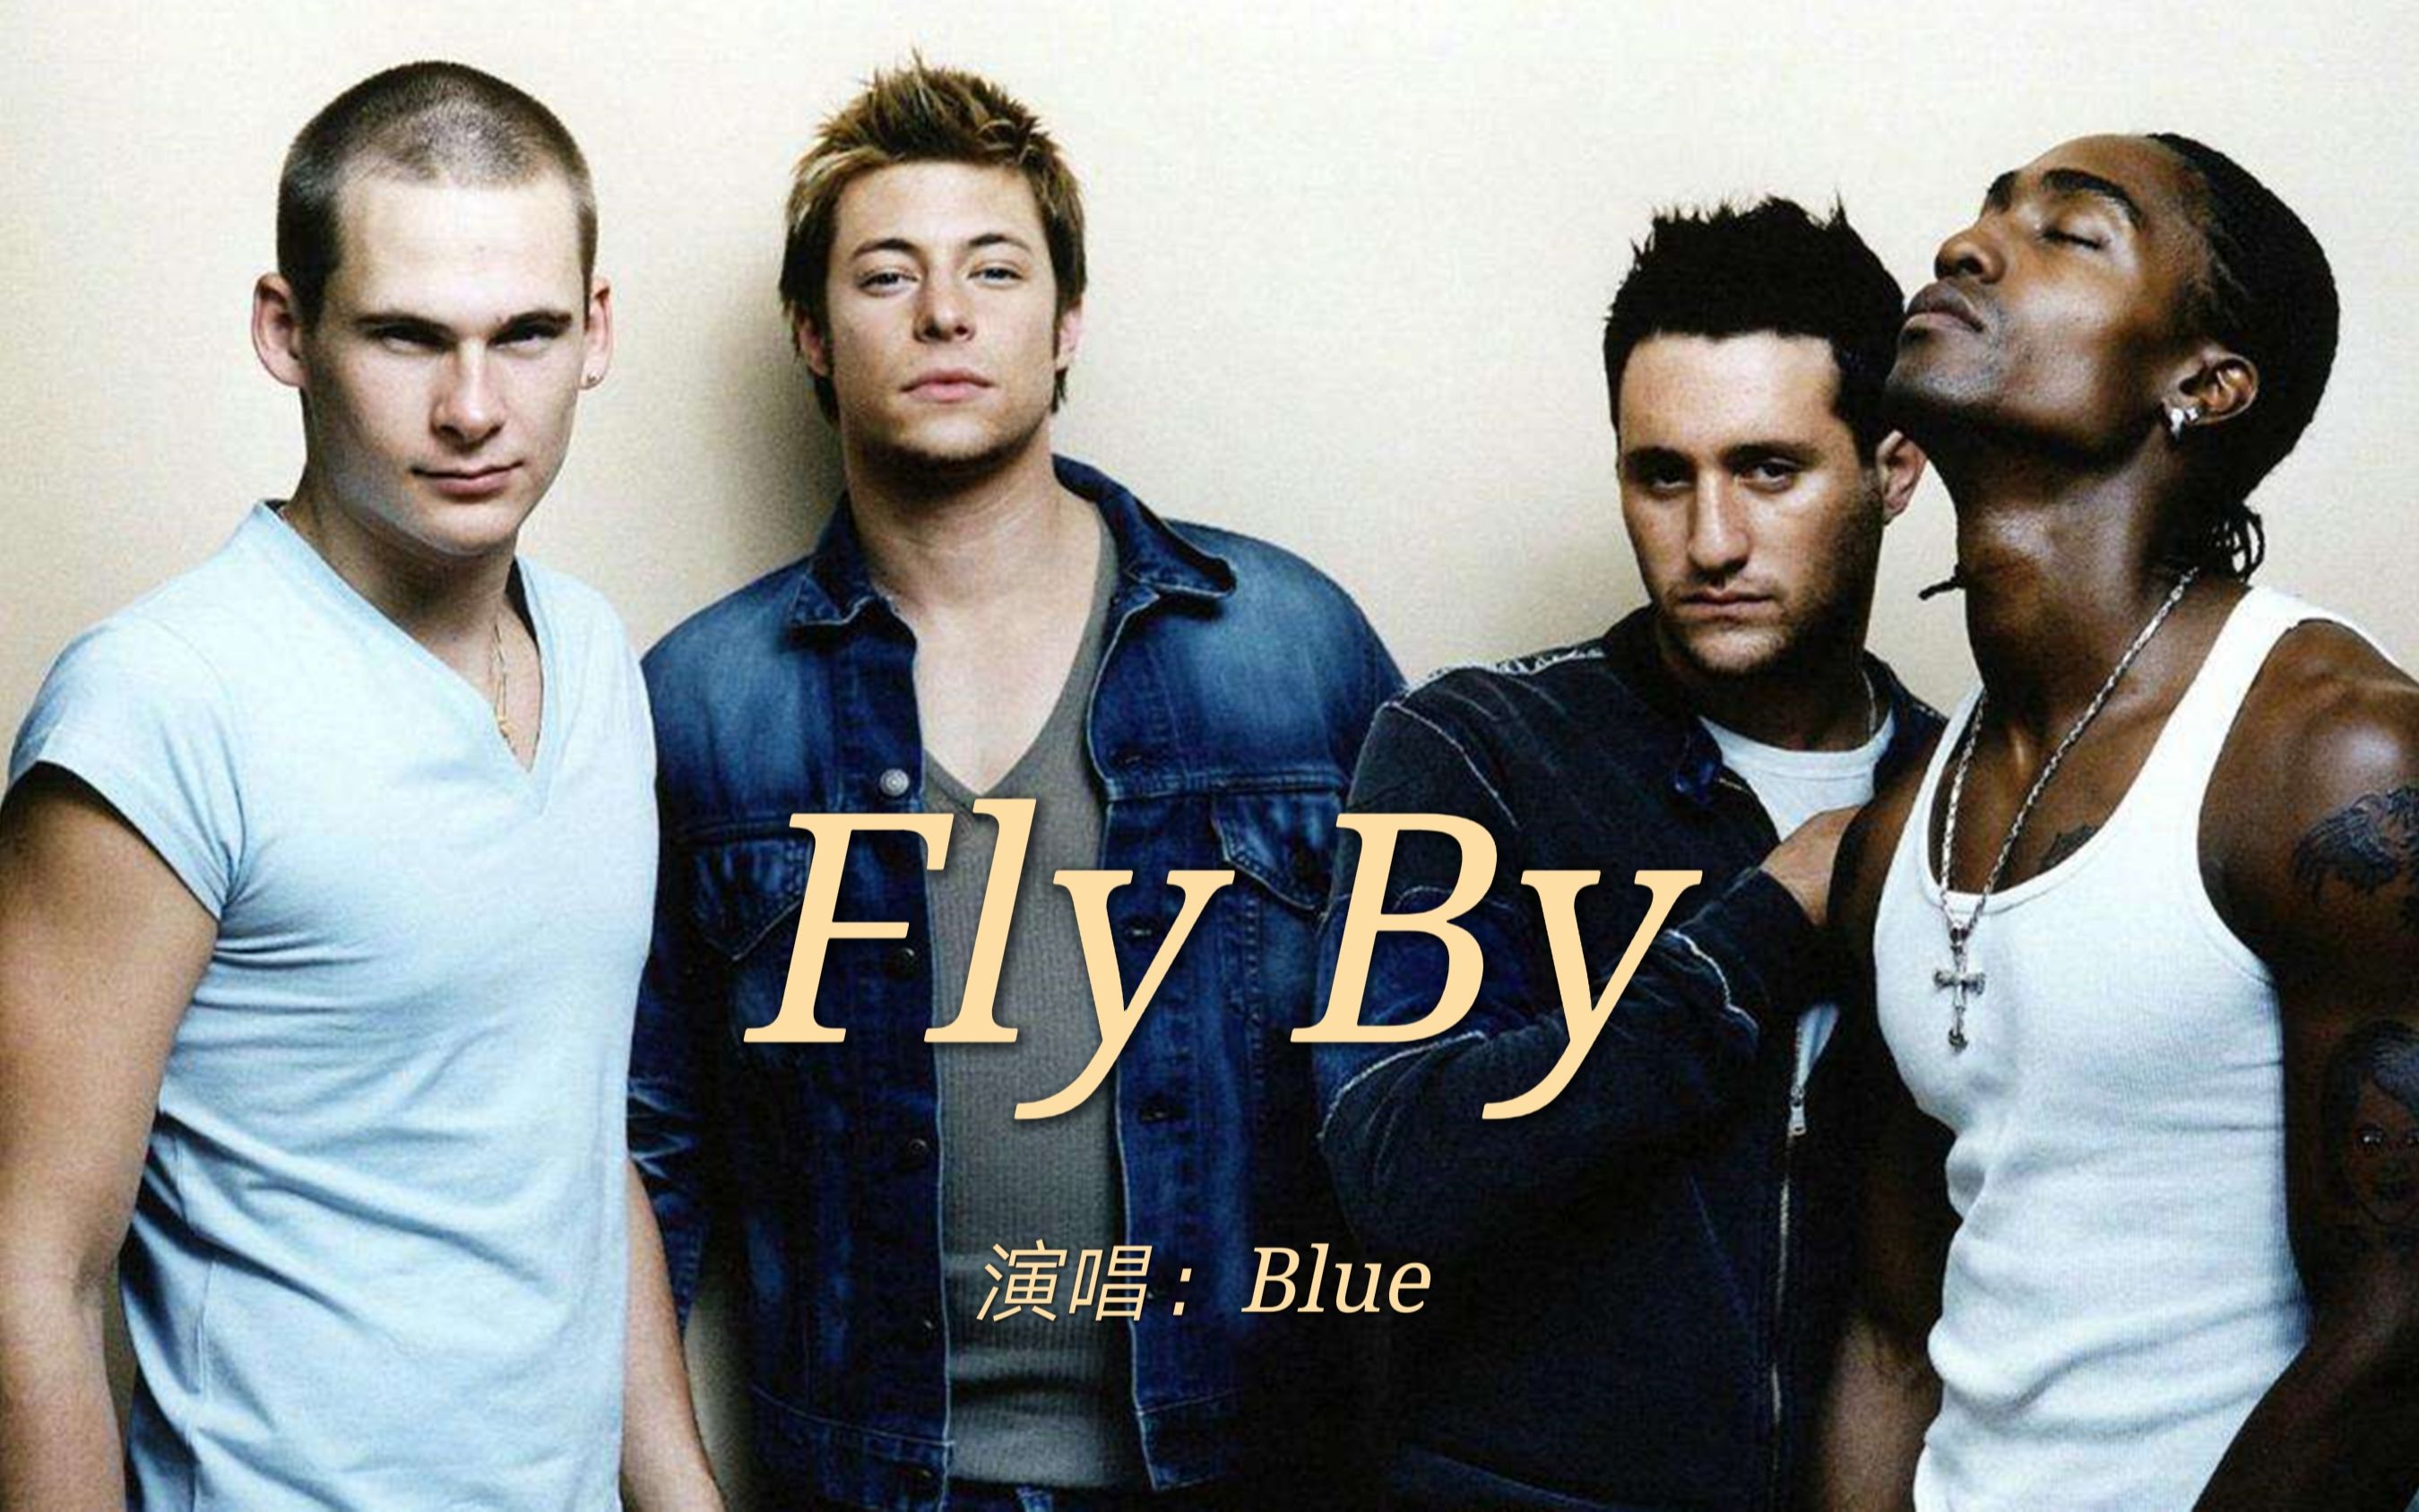 2001年blue乐队经典r&b歌曲《fly by》,让人摇摆的旋律,很上头